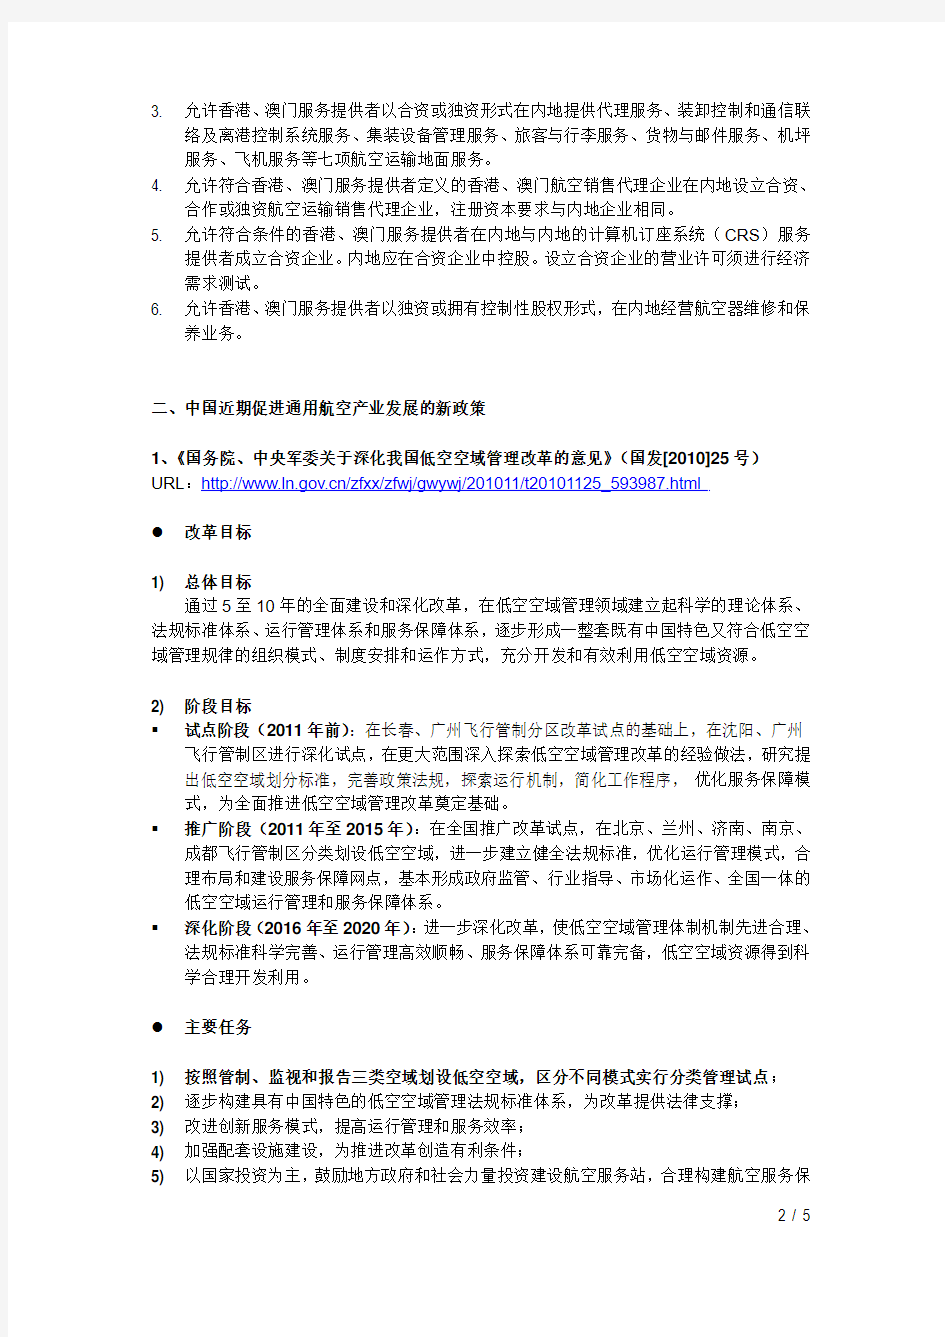 中国民用航空领域相关政策简介20110712